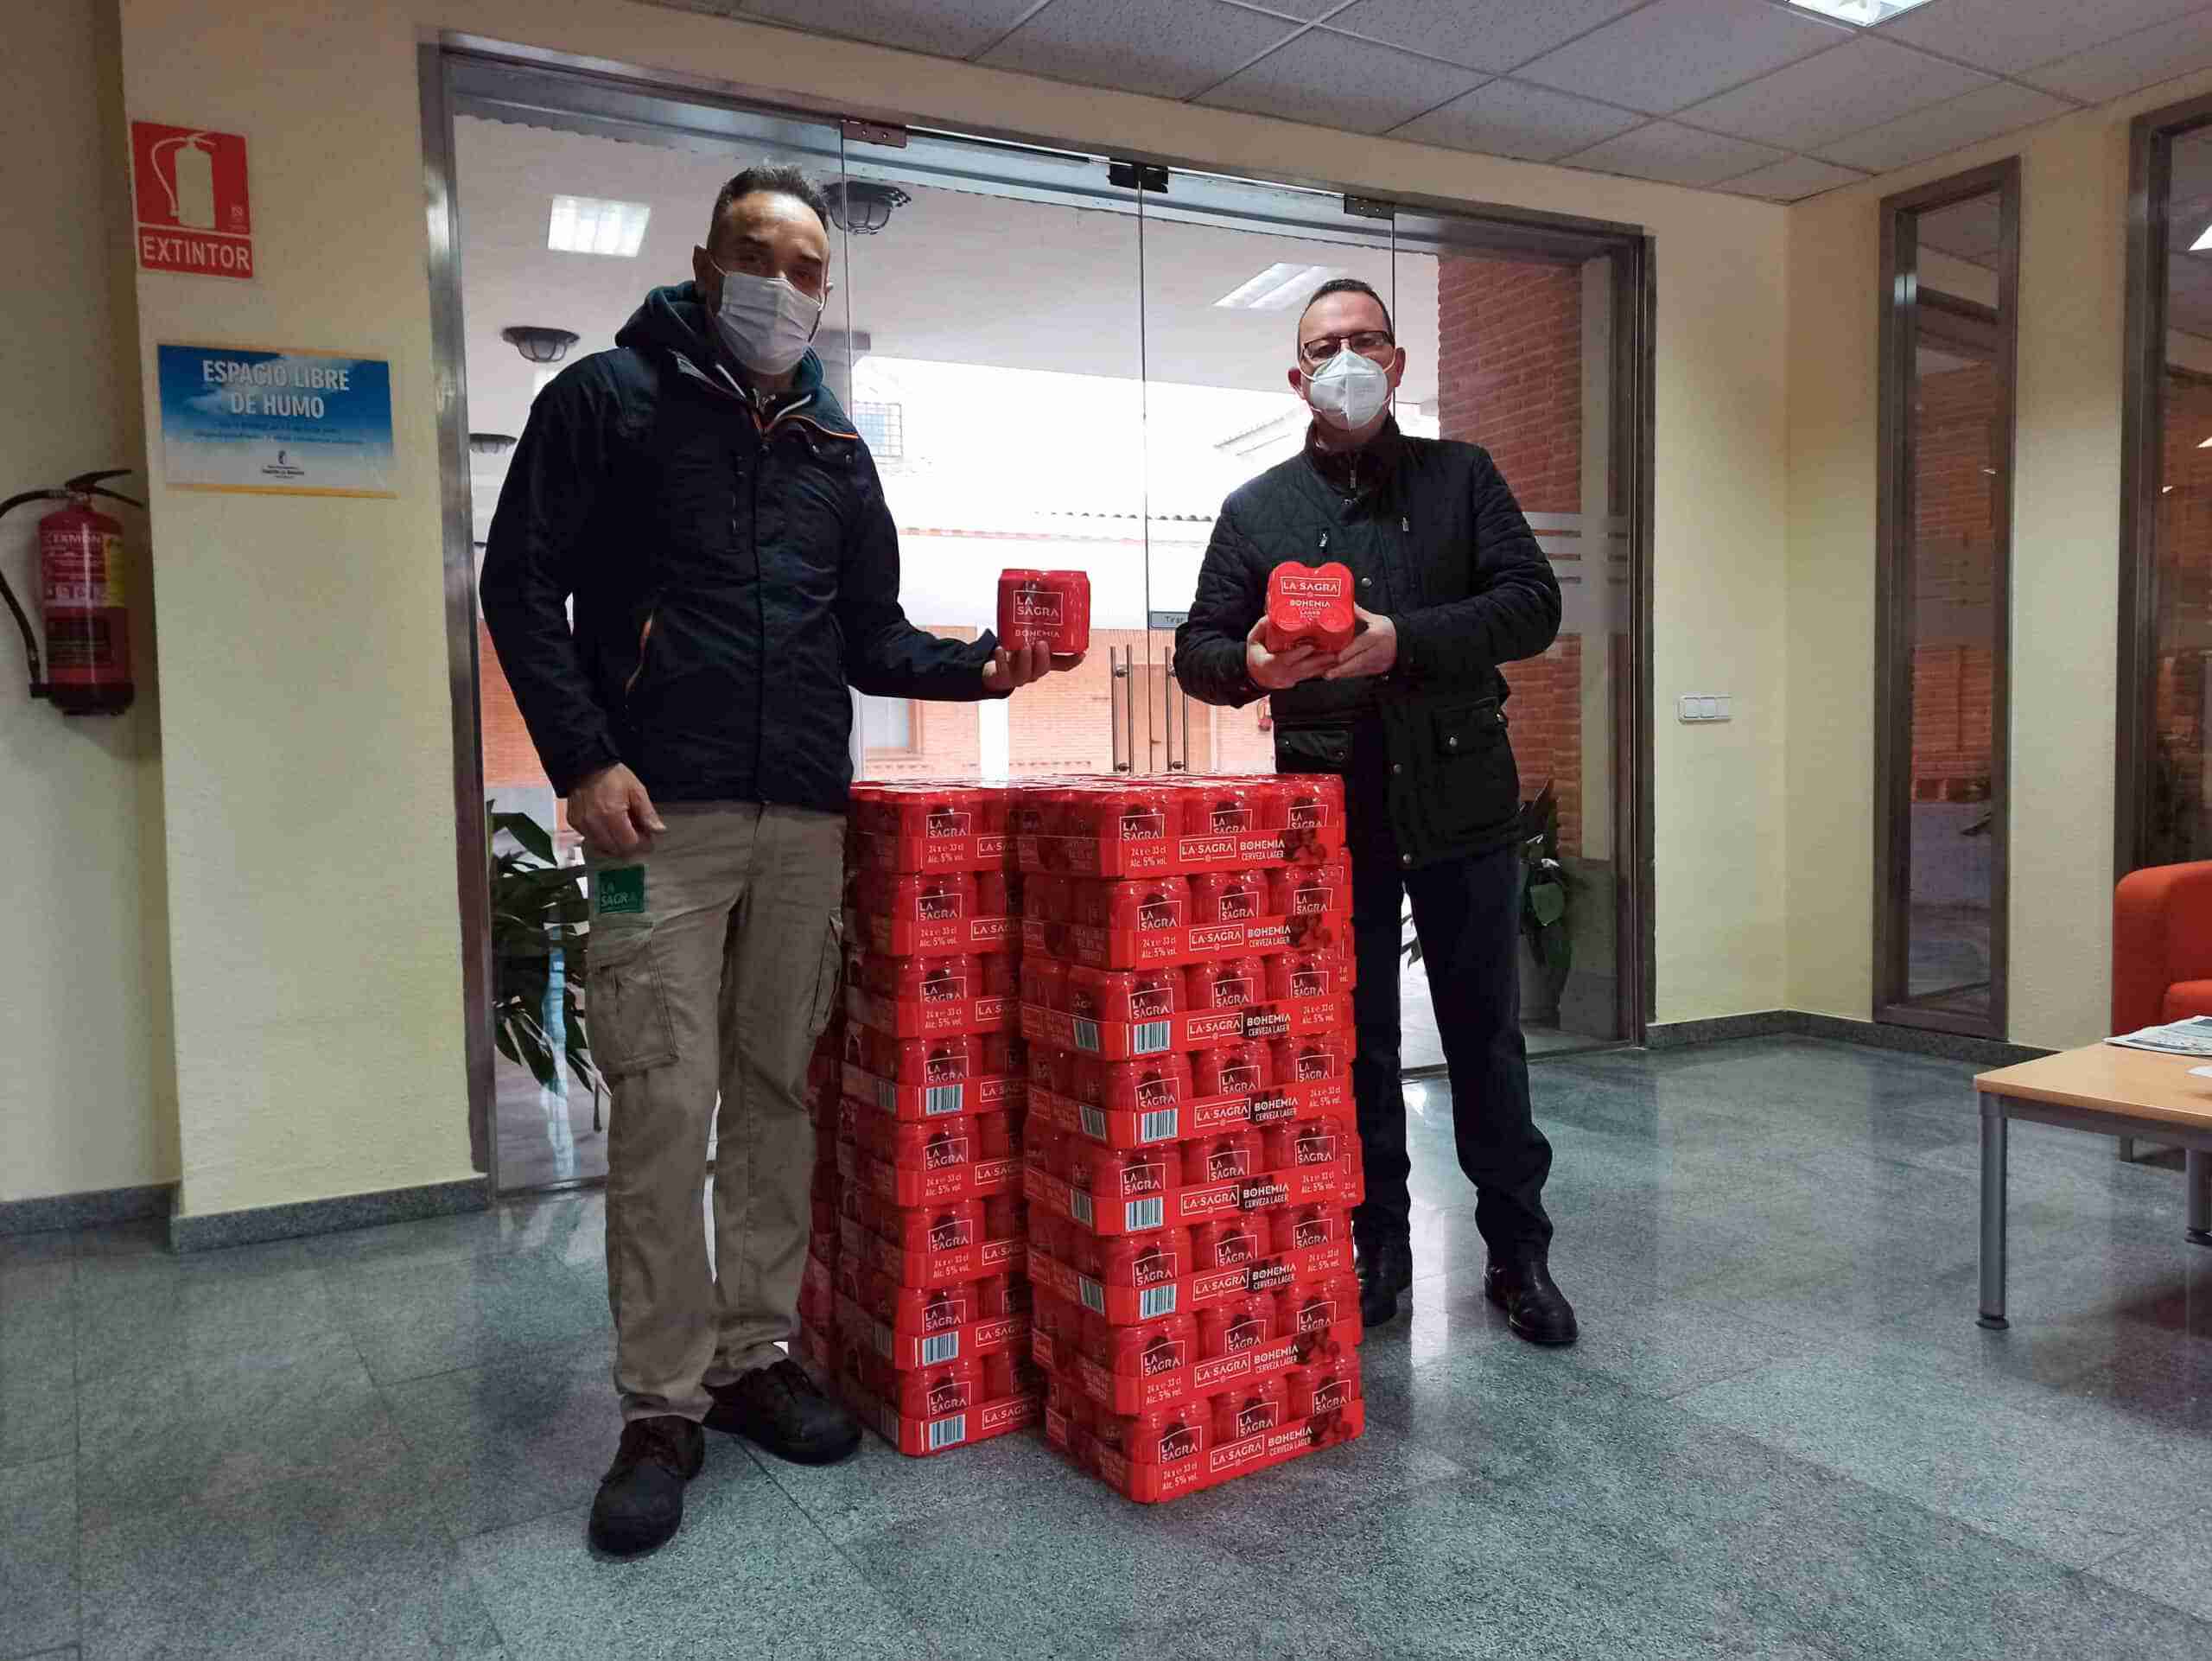 La SAGRA regala cerveza a los trabajadores y voluntarios que han ayudado durante la ola de frío 1